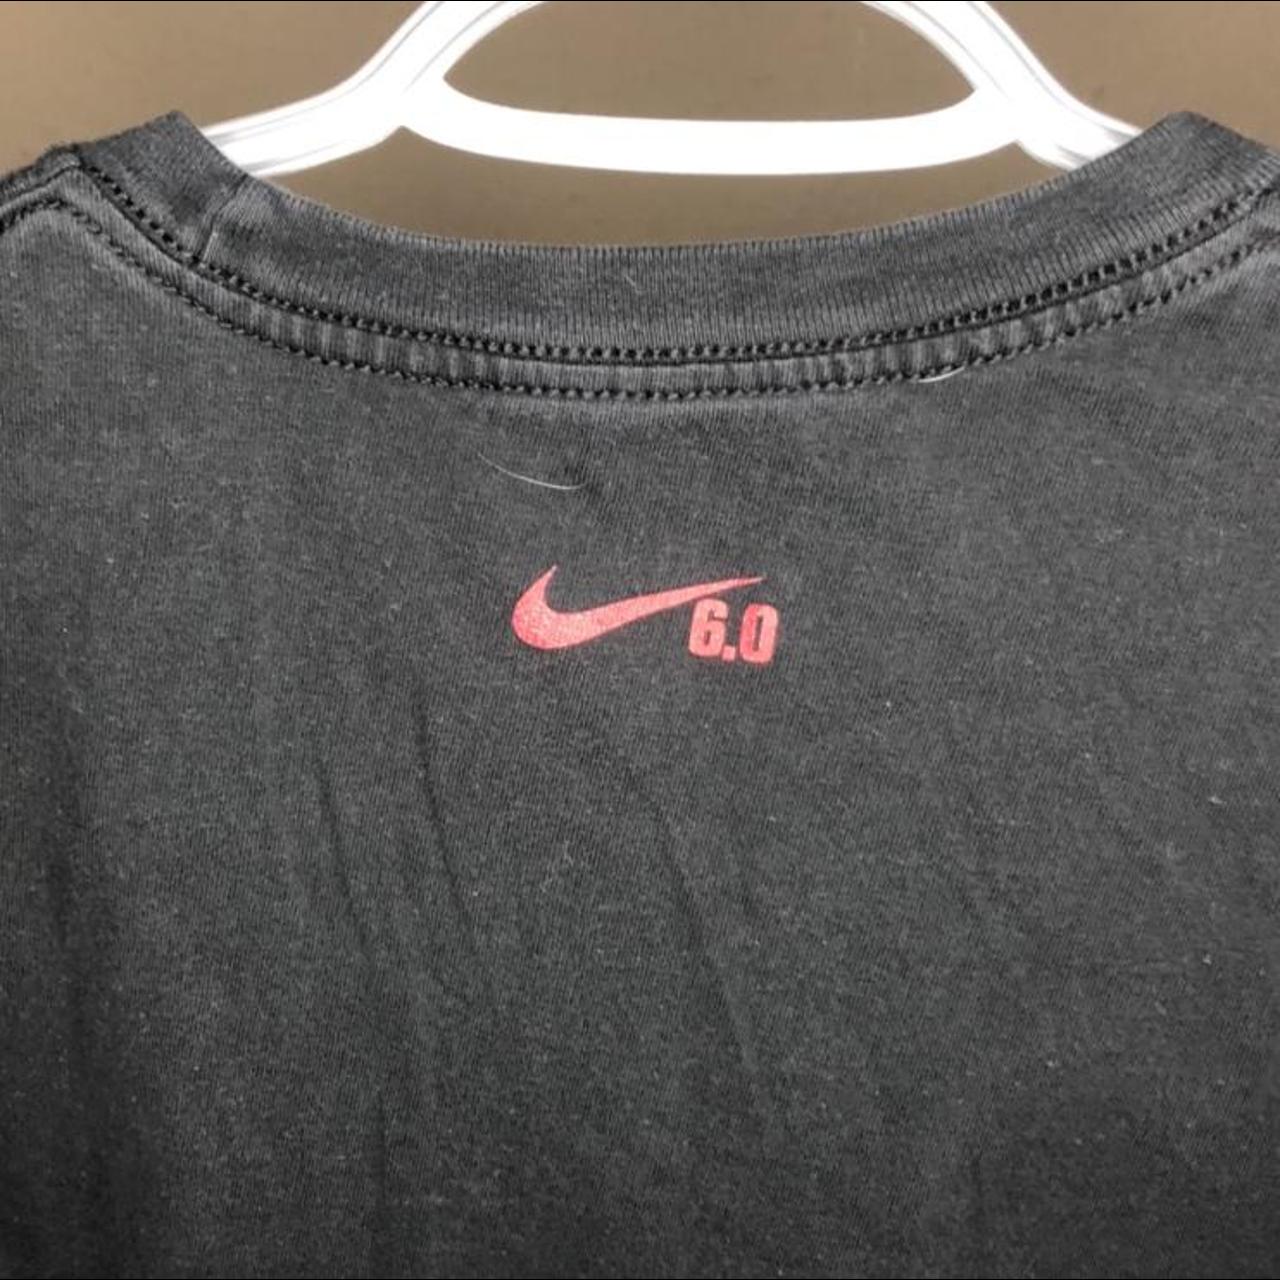 Landgoed Een effectief Uitpakken Nike 6.0 shoe T-shirt. In great condition! Amazing... - Depop